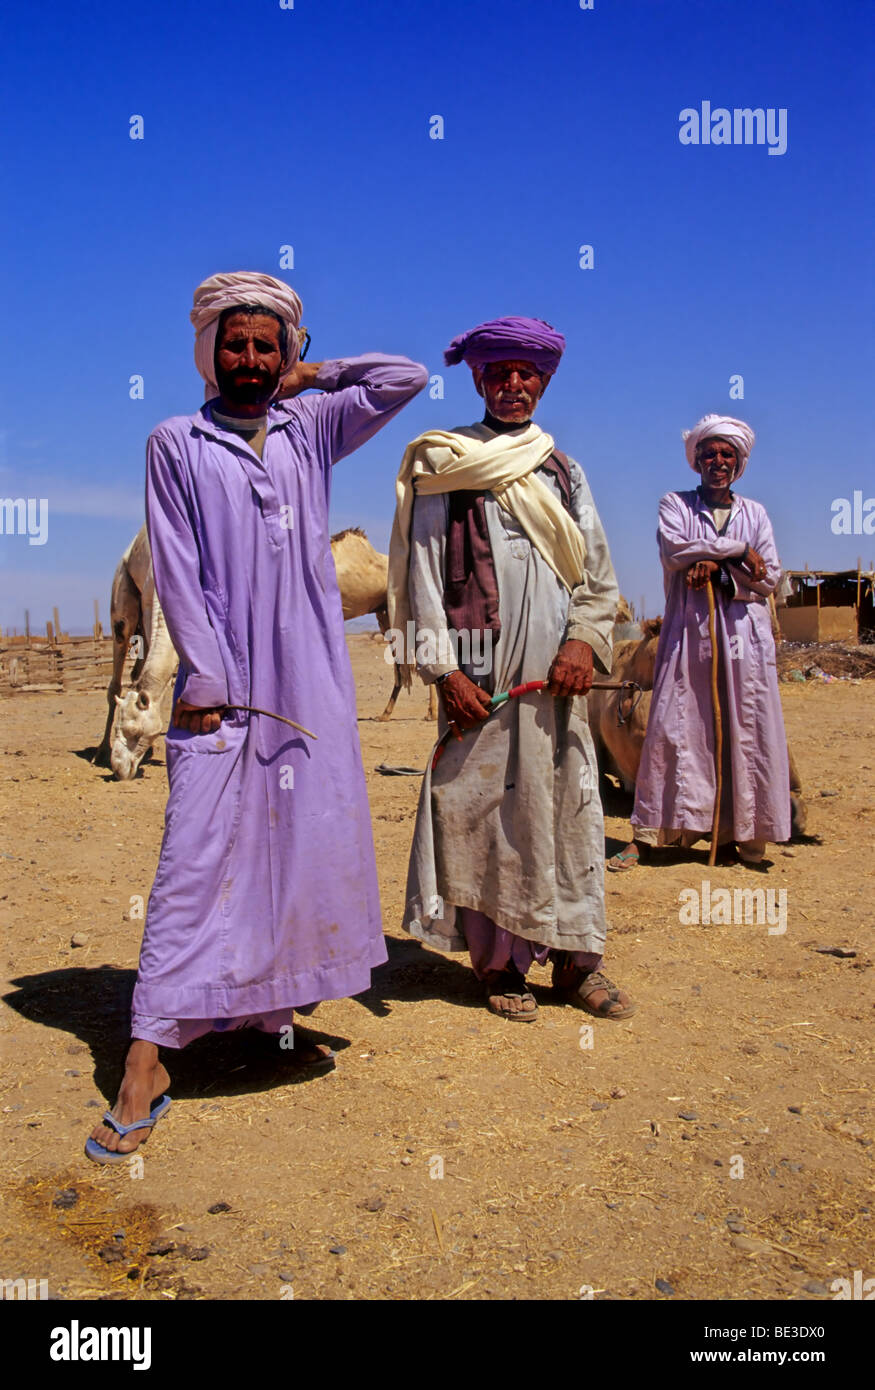 Drei Beduinen in Tracht, stolz, ägyptischen, Jellaba, Turban, Pose, Kamelmarkt, Shalatin, Ägypten, Afrika Stockfoto